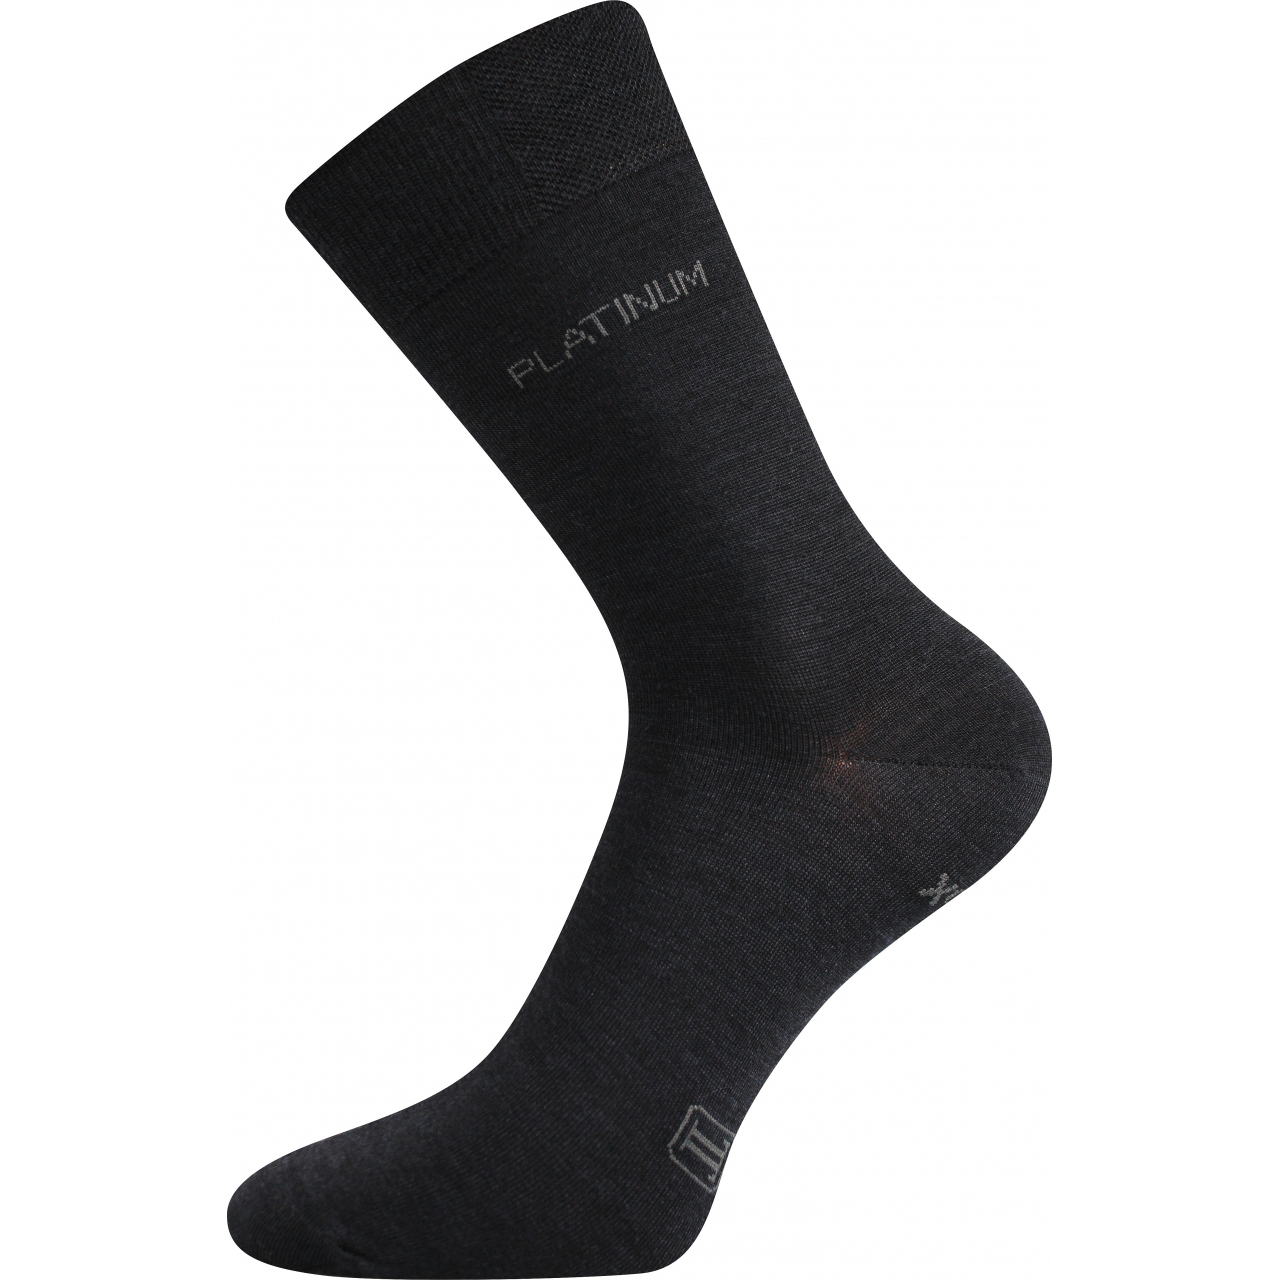 Ponožky unisex společenské Lonka Dewool - černé, 35-38